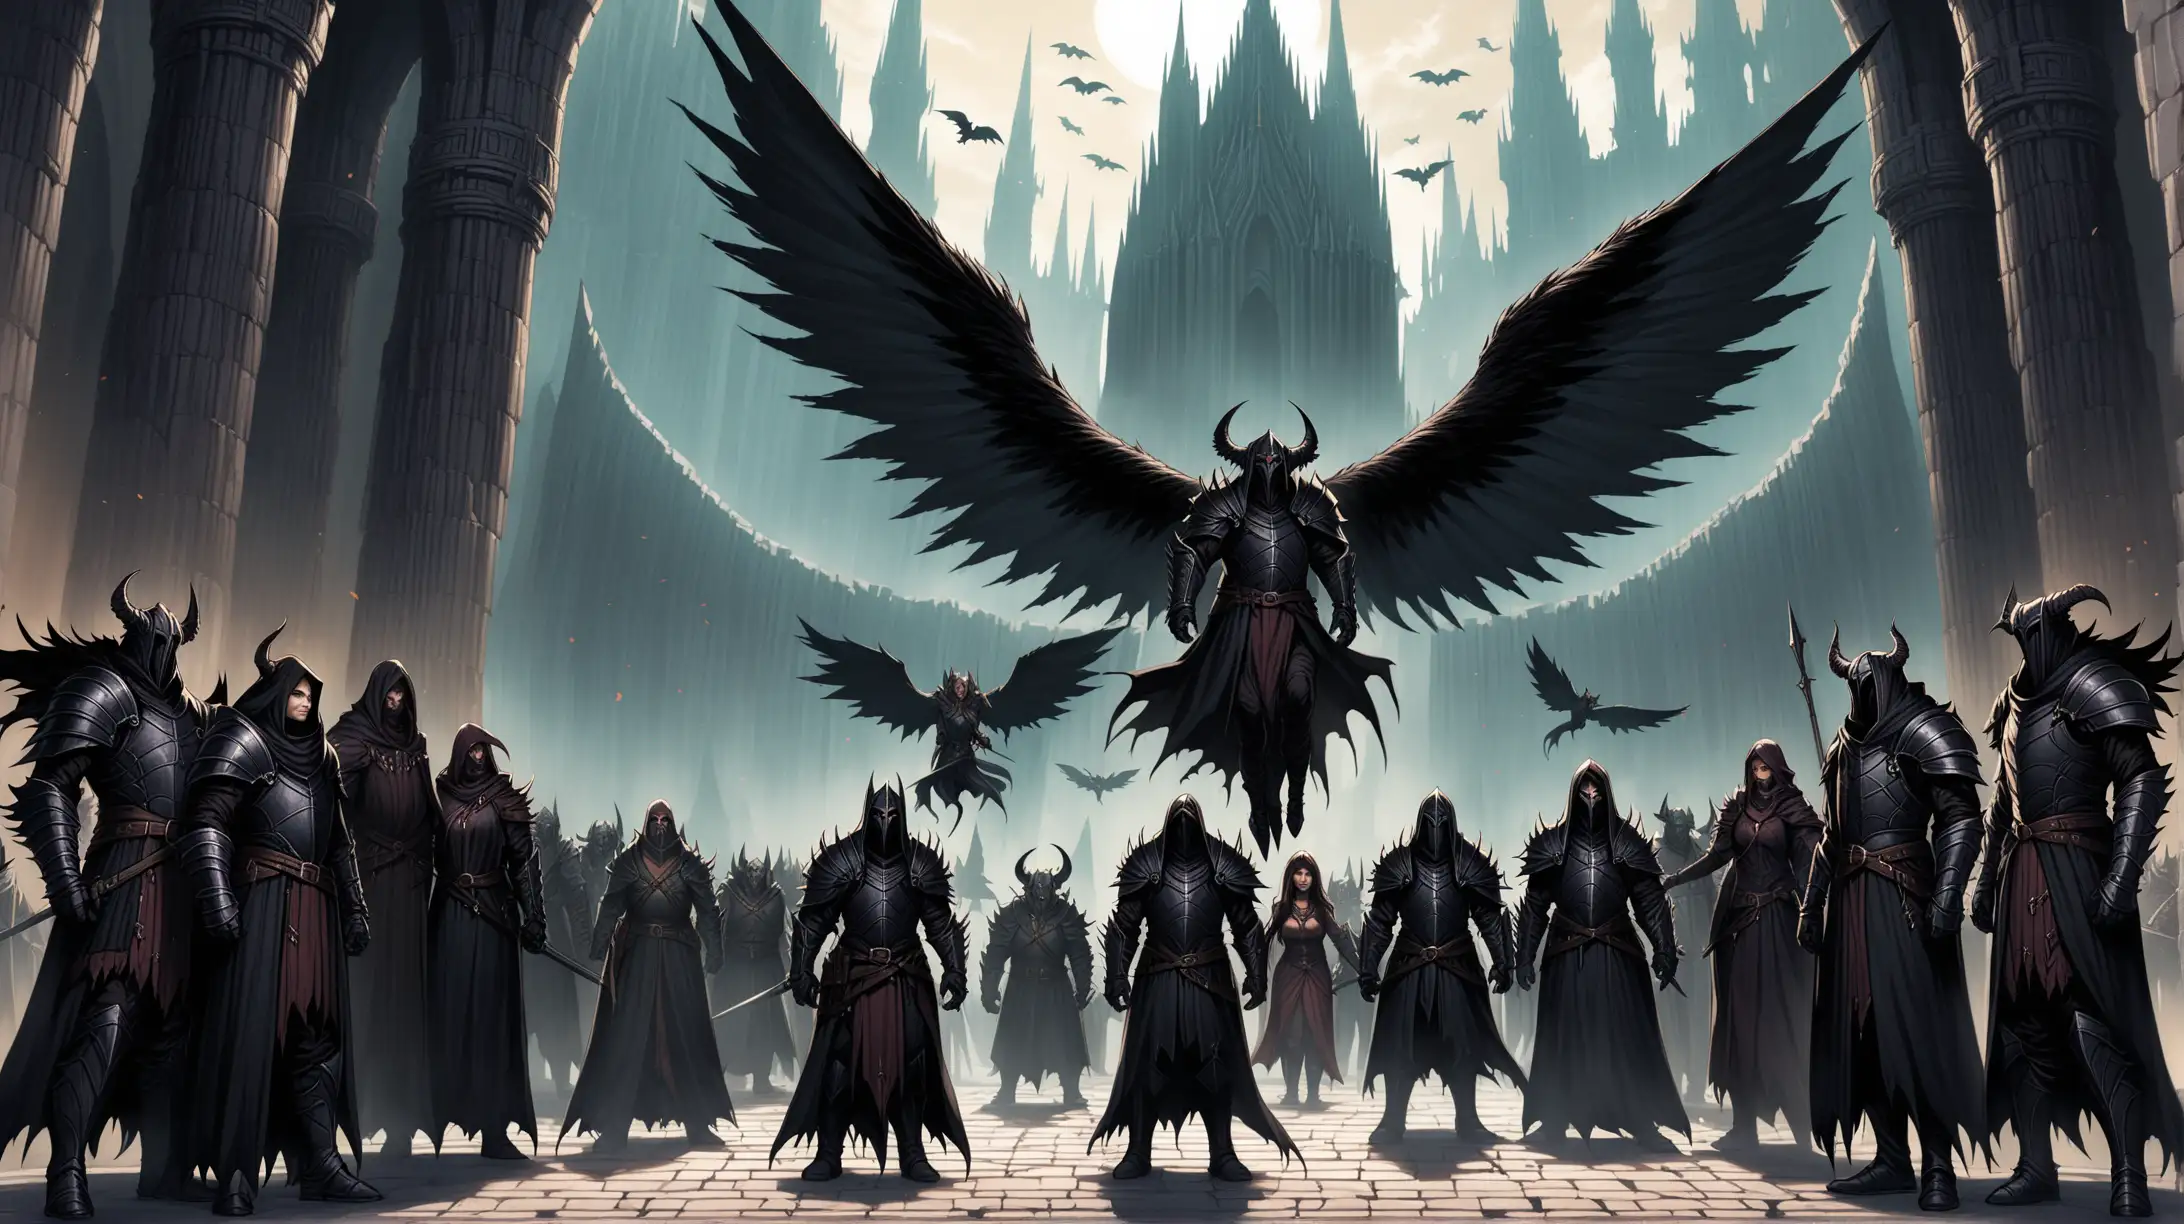 group of warlocks and dark knights, men and women, winged tieflings, dark temple, Medieval fantasy